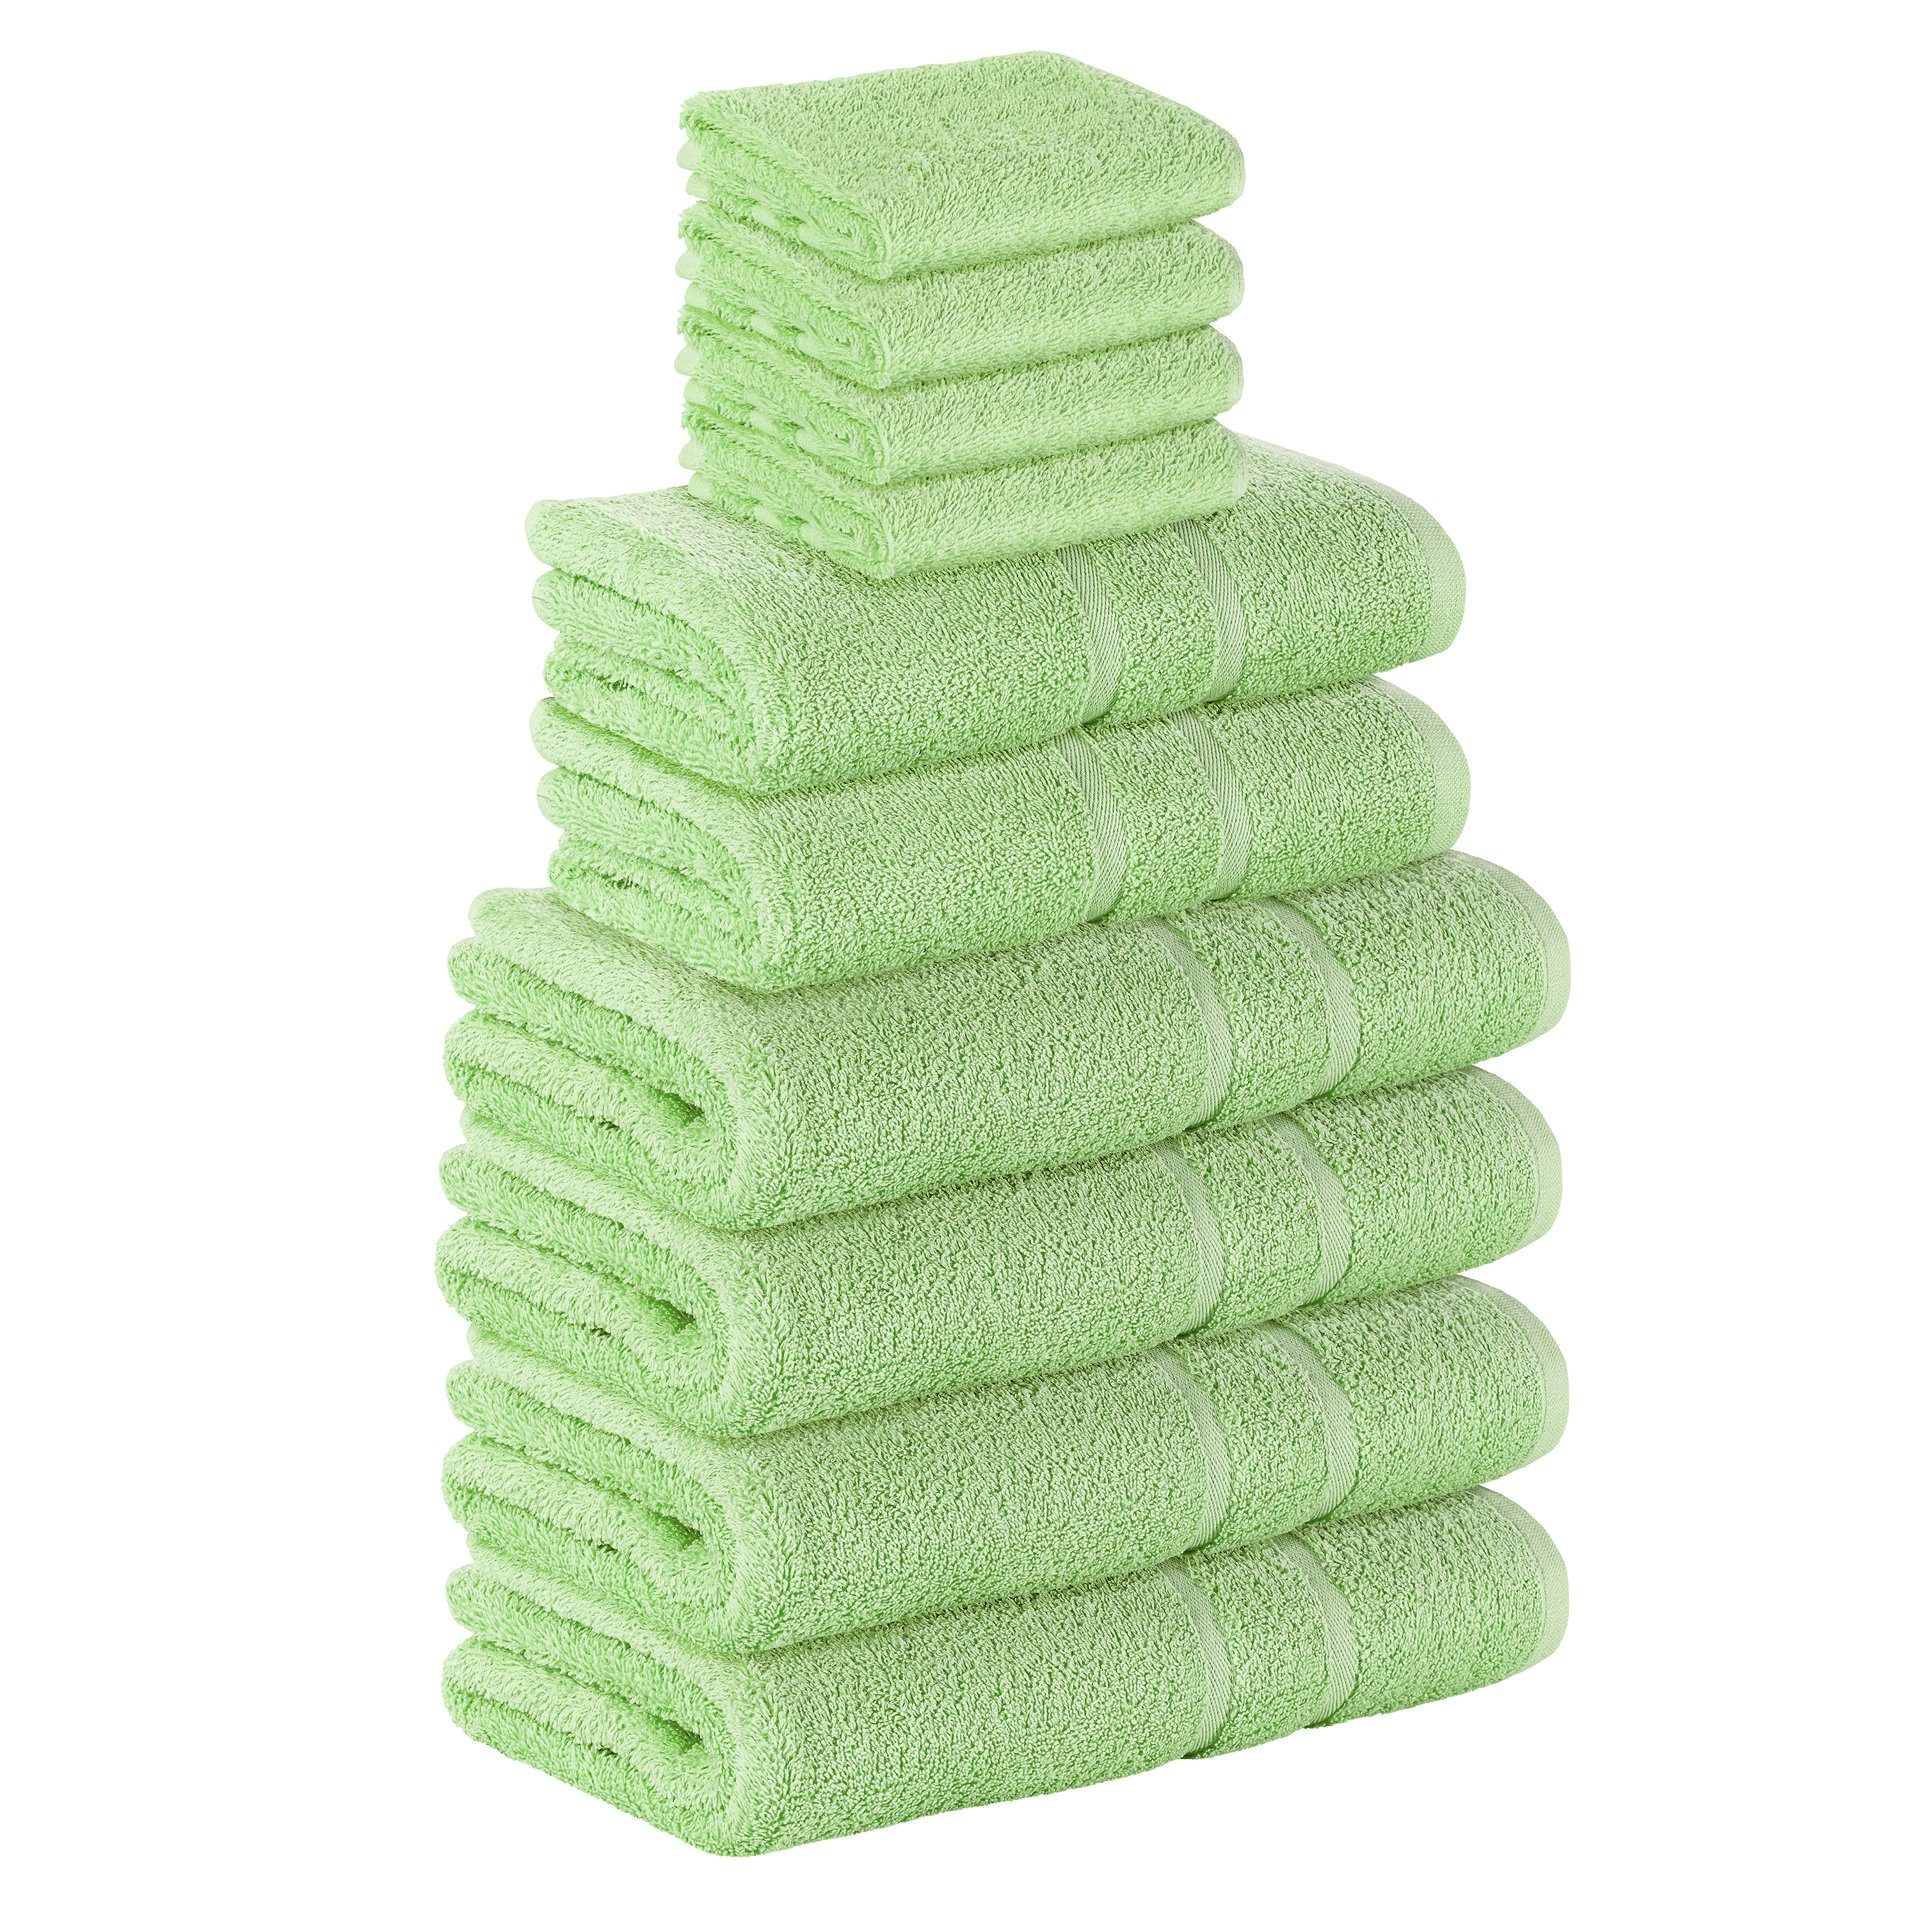 StickandShine Handtuch Set 4x Gästehandtuch 2x Handtücher 4x Duschtücher als SET in verschiedenen Farben (10 Teilig) 100% Baumwolle 500 GSM Frottee 10er Handtuch Pack, 100% Baumwolle 500 GSM Hellgrün